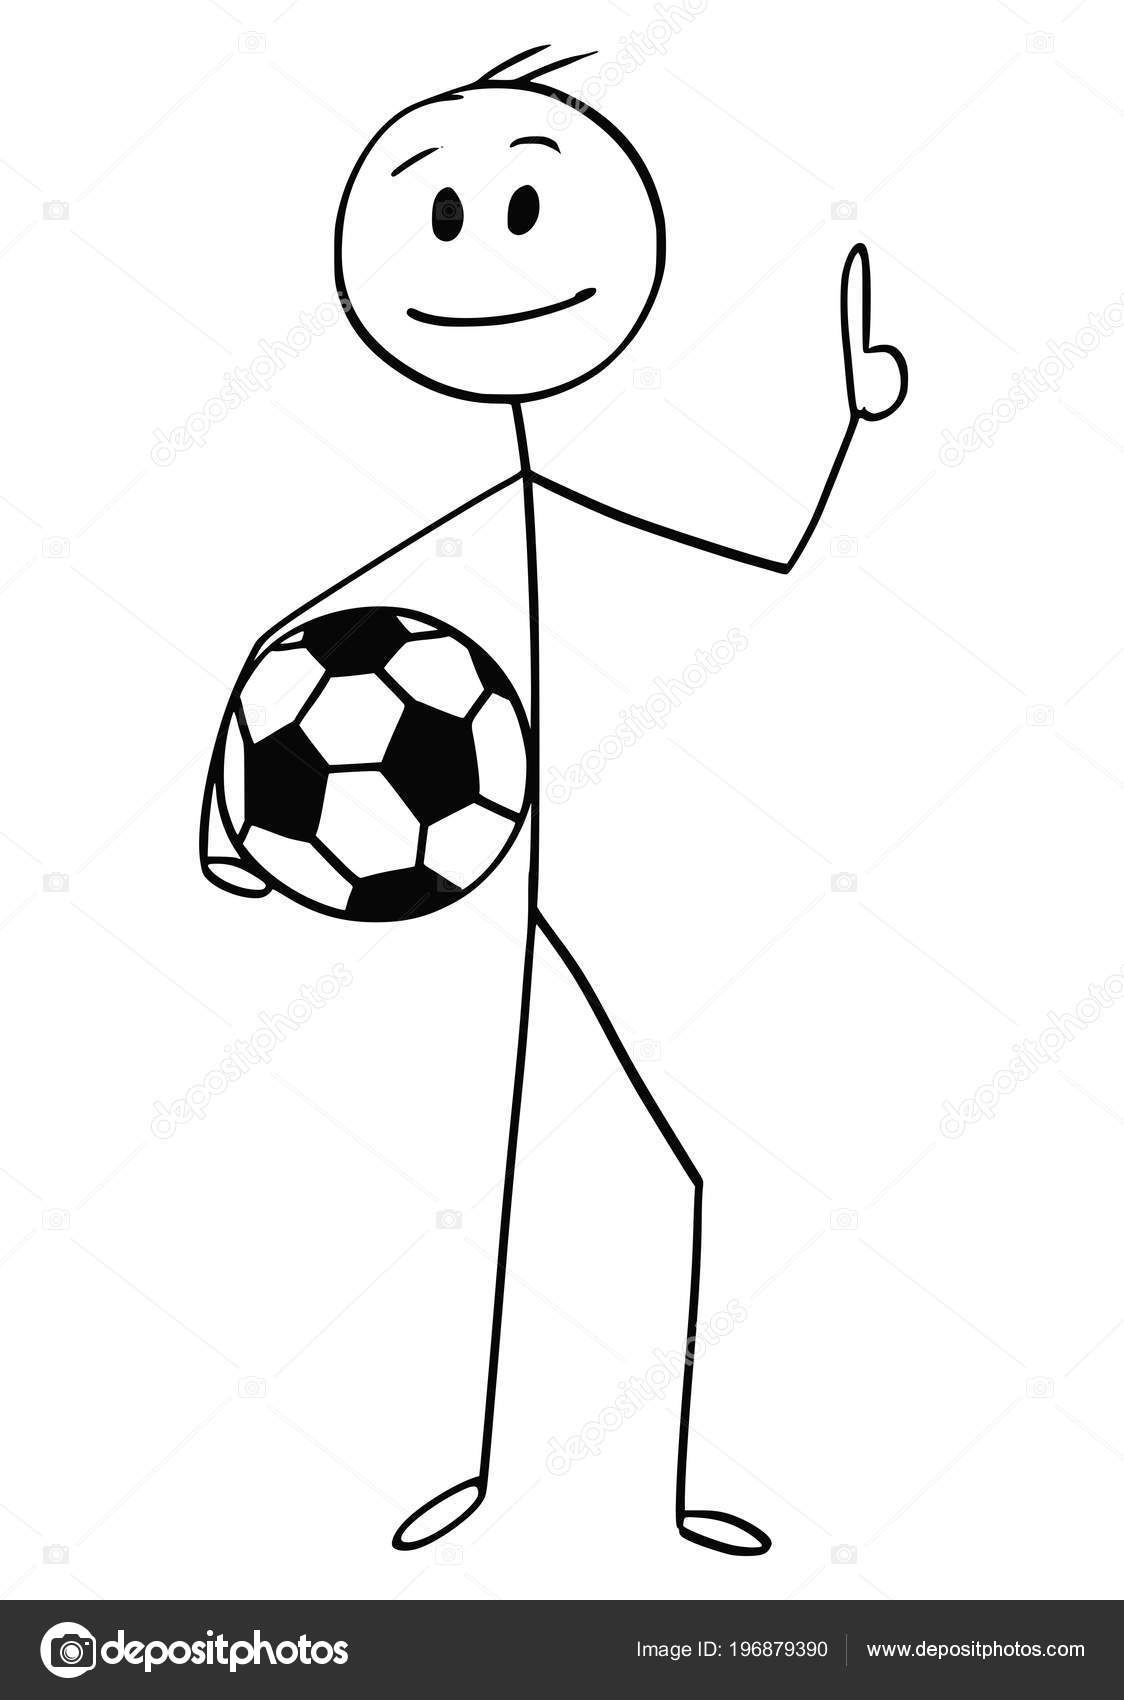 ilustração de um jogador de futebol segurando uma bola de